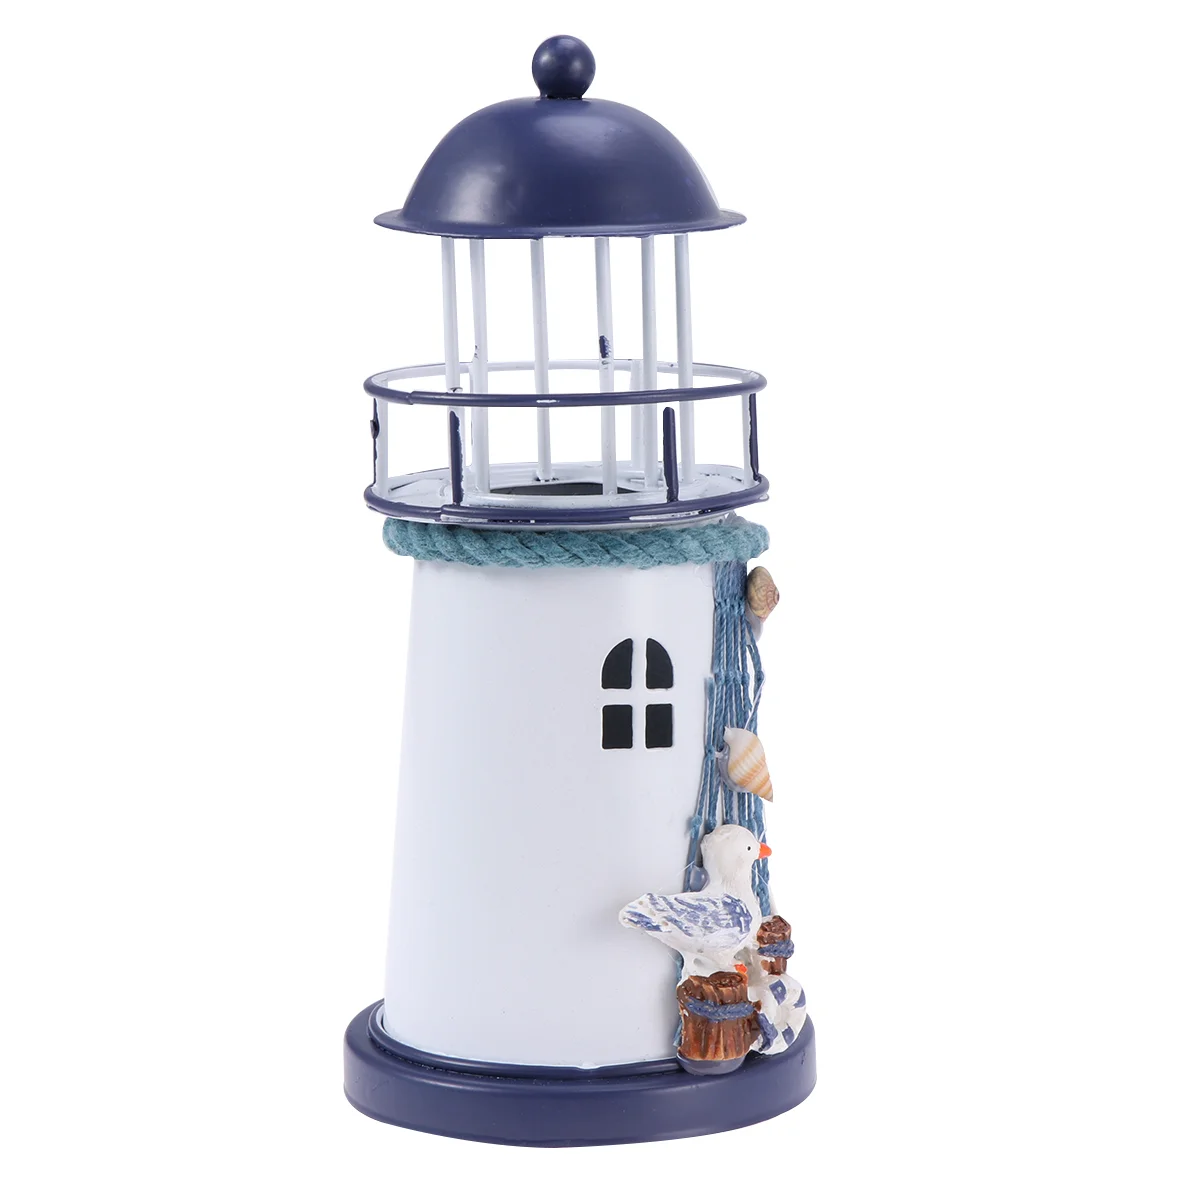 

LED Light Tower Coastal Decor Home Vintage Decor Lighthouse Tealight Outdoor Decor Beach Bathroom Decor Desk Lamp